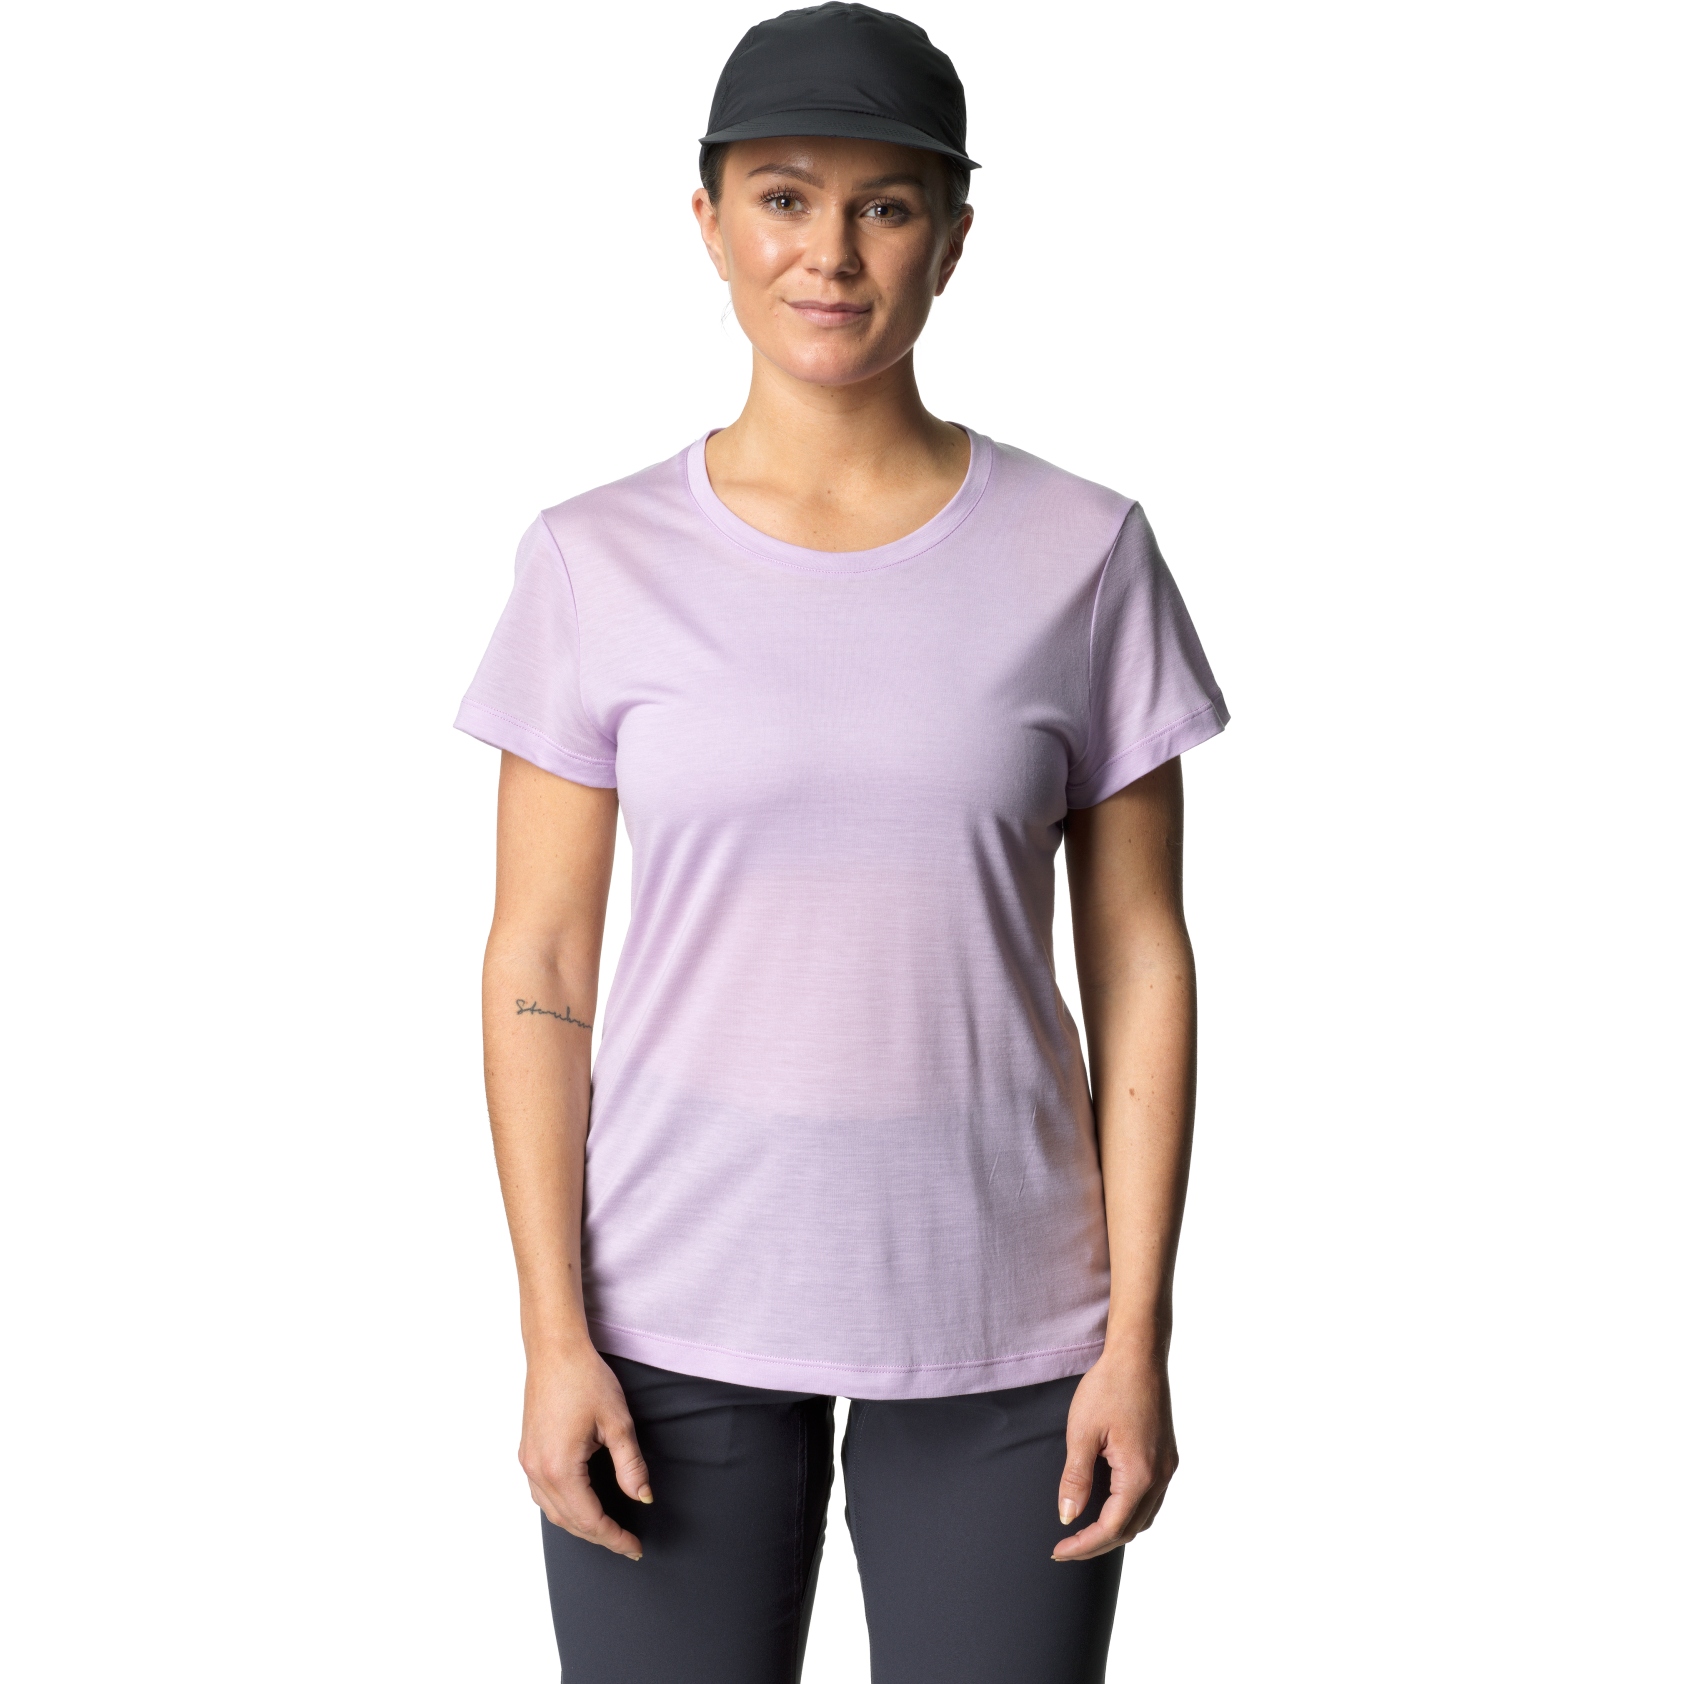 Produktbild von Houdini Tree Damen T-Shirt - Purple Heather